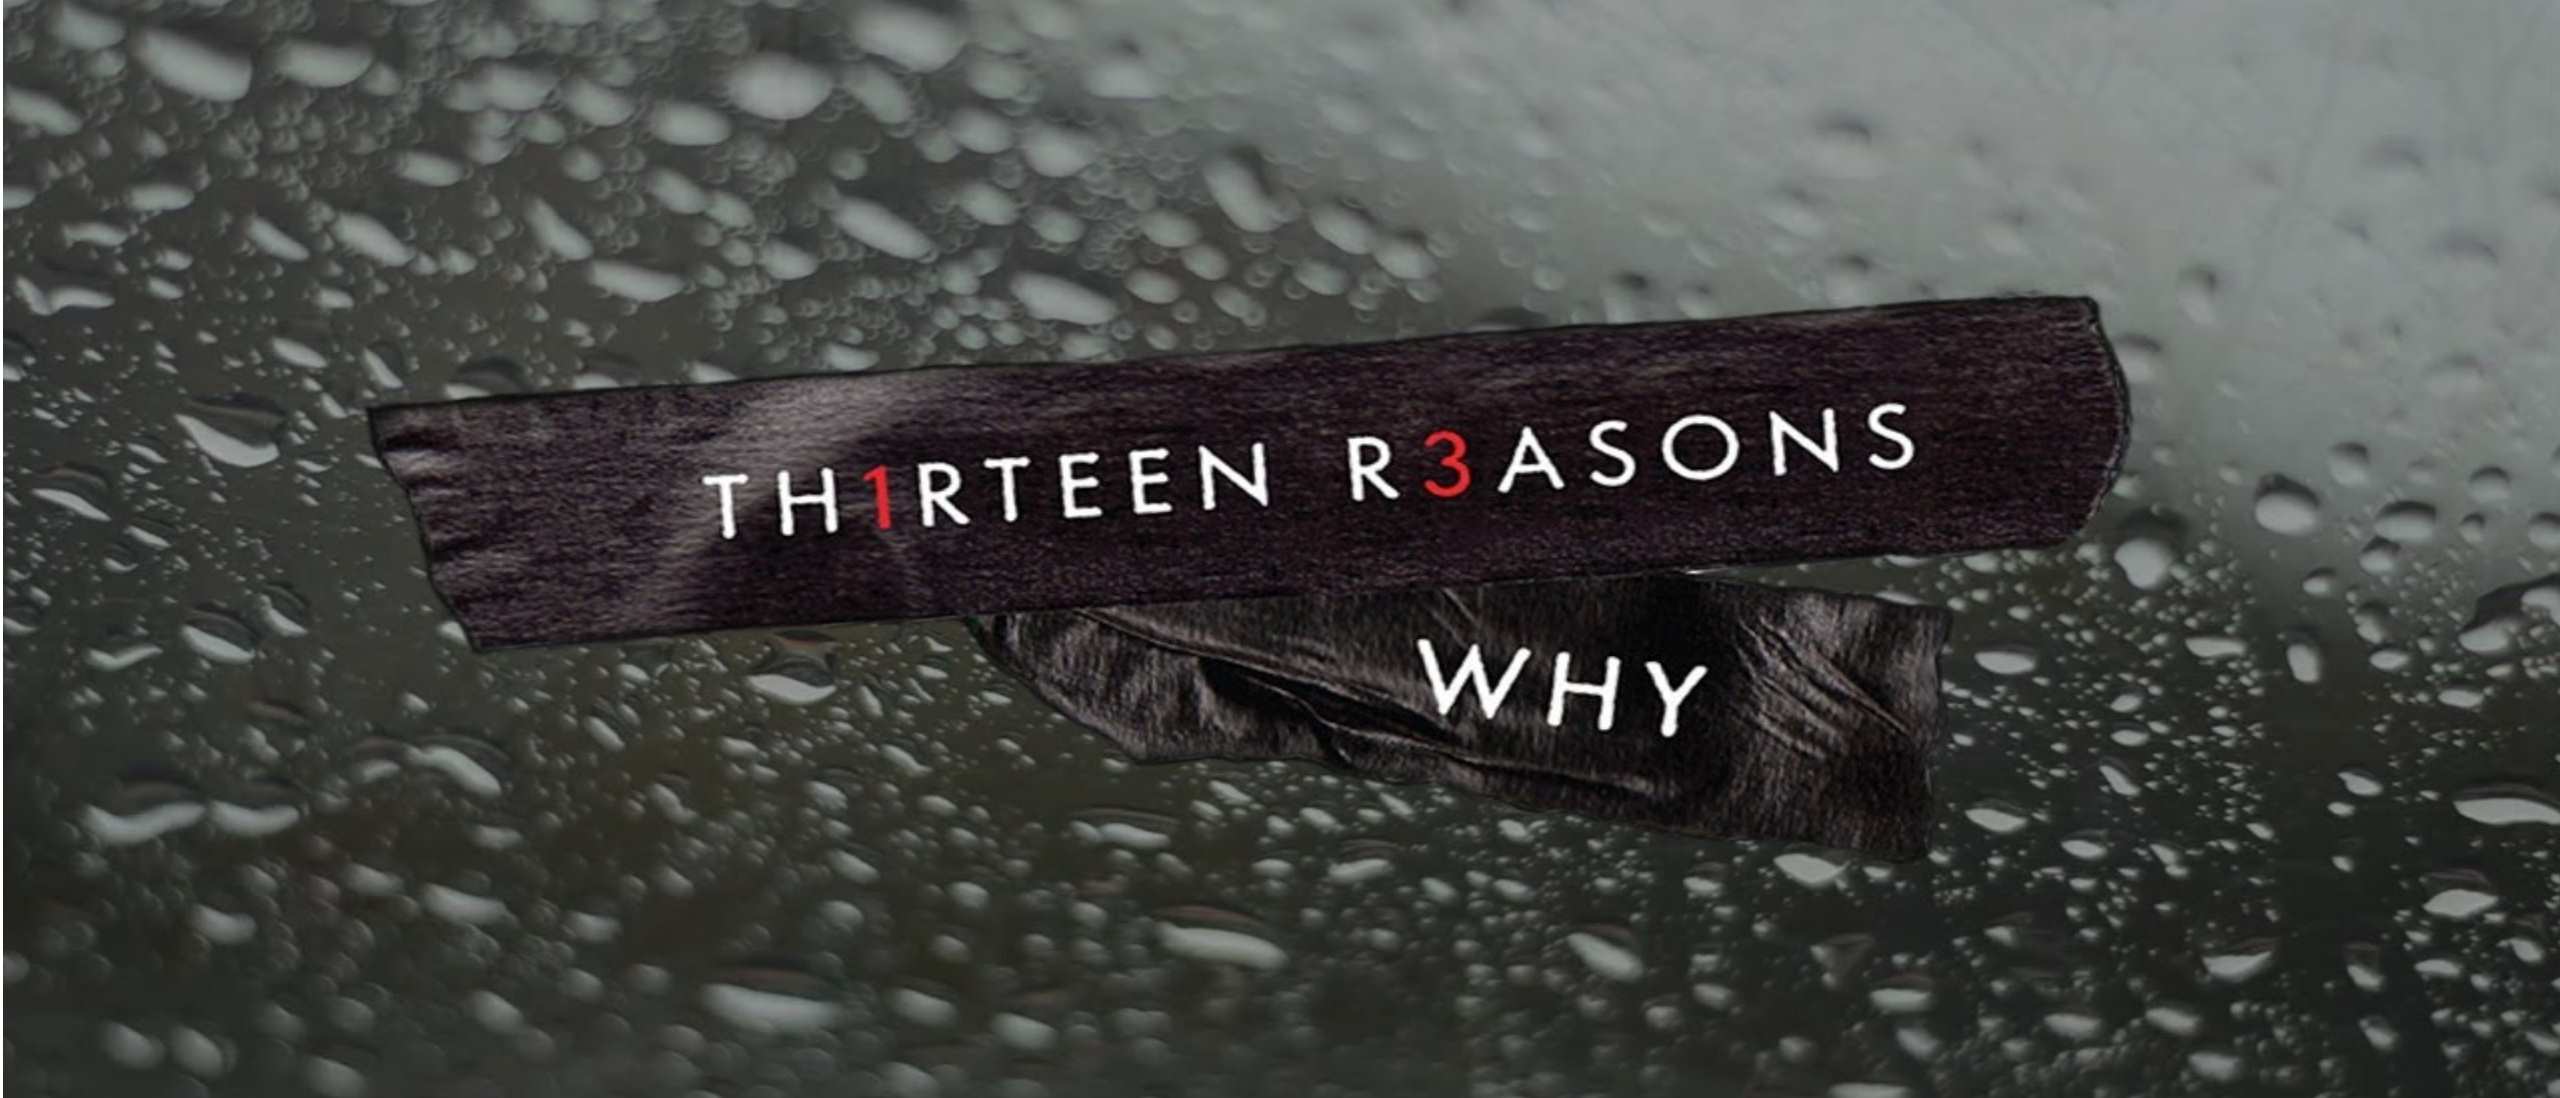 13 reasons why season 2 gomovies